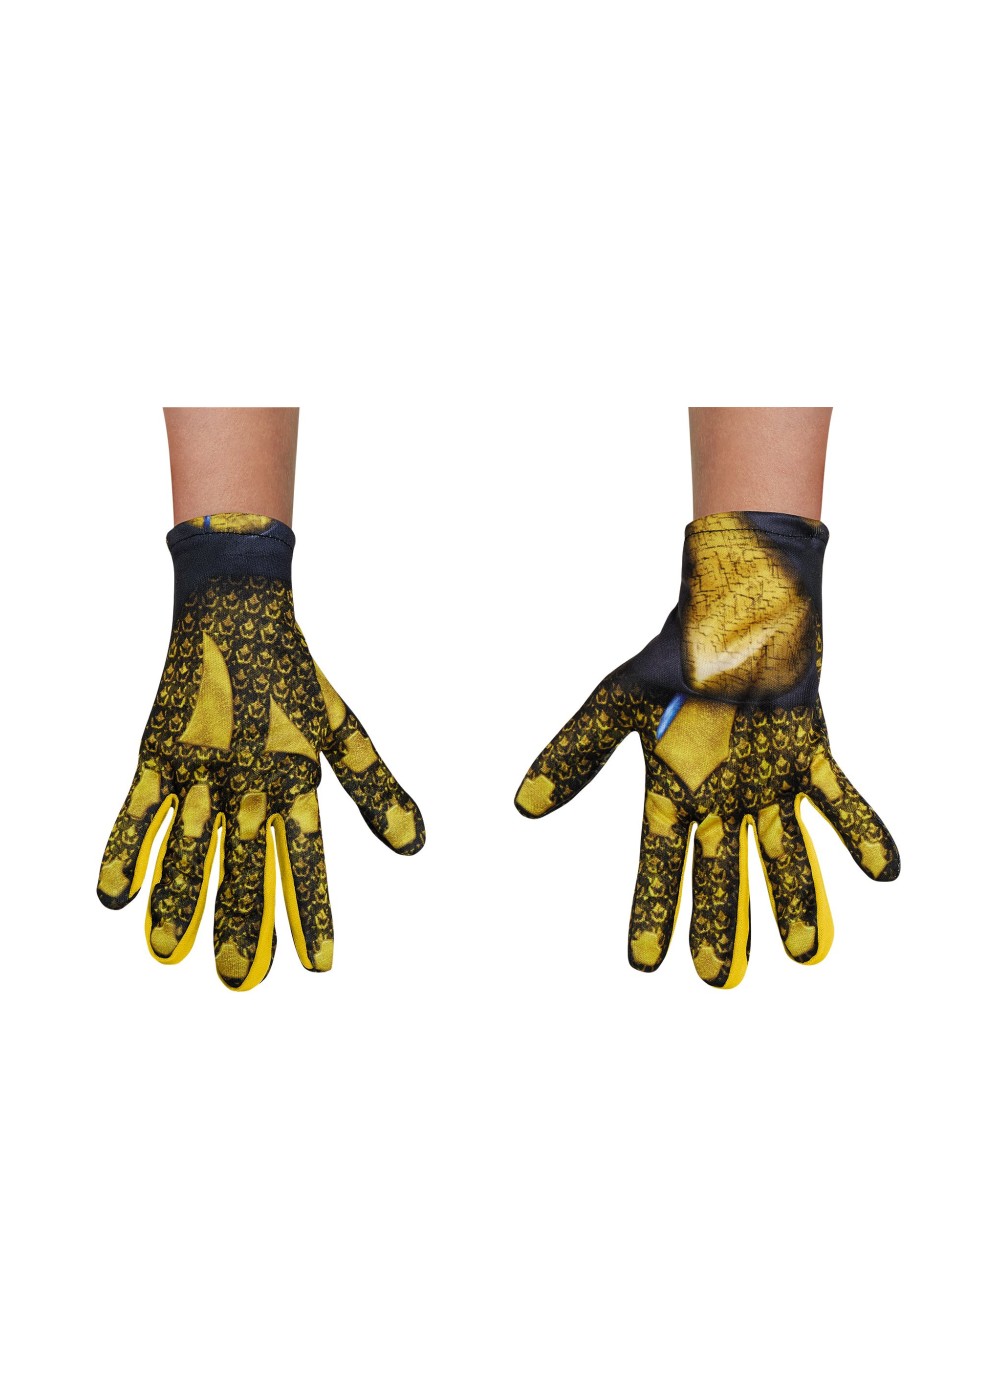 Power Rangers Movie Yellow Kids Costume Gloves